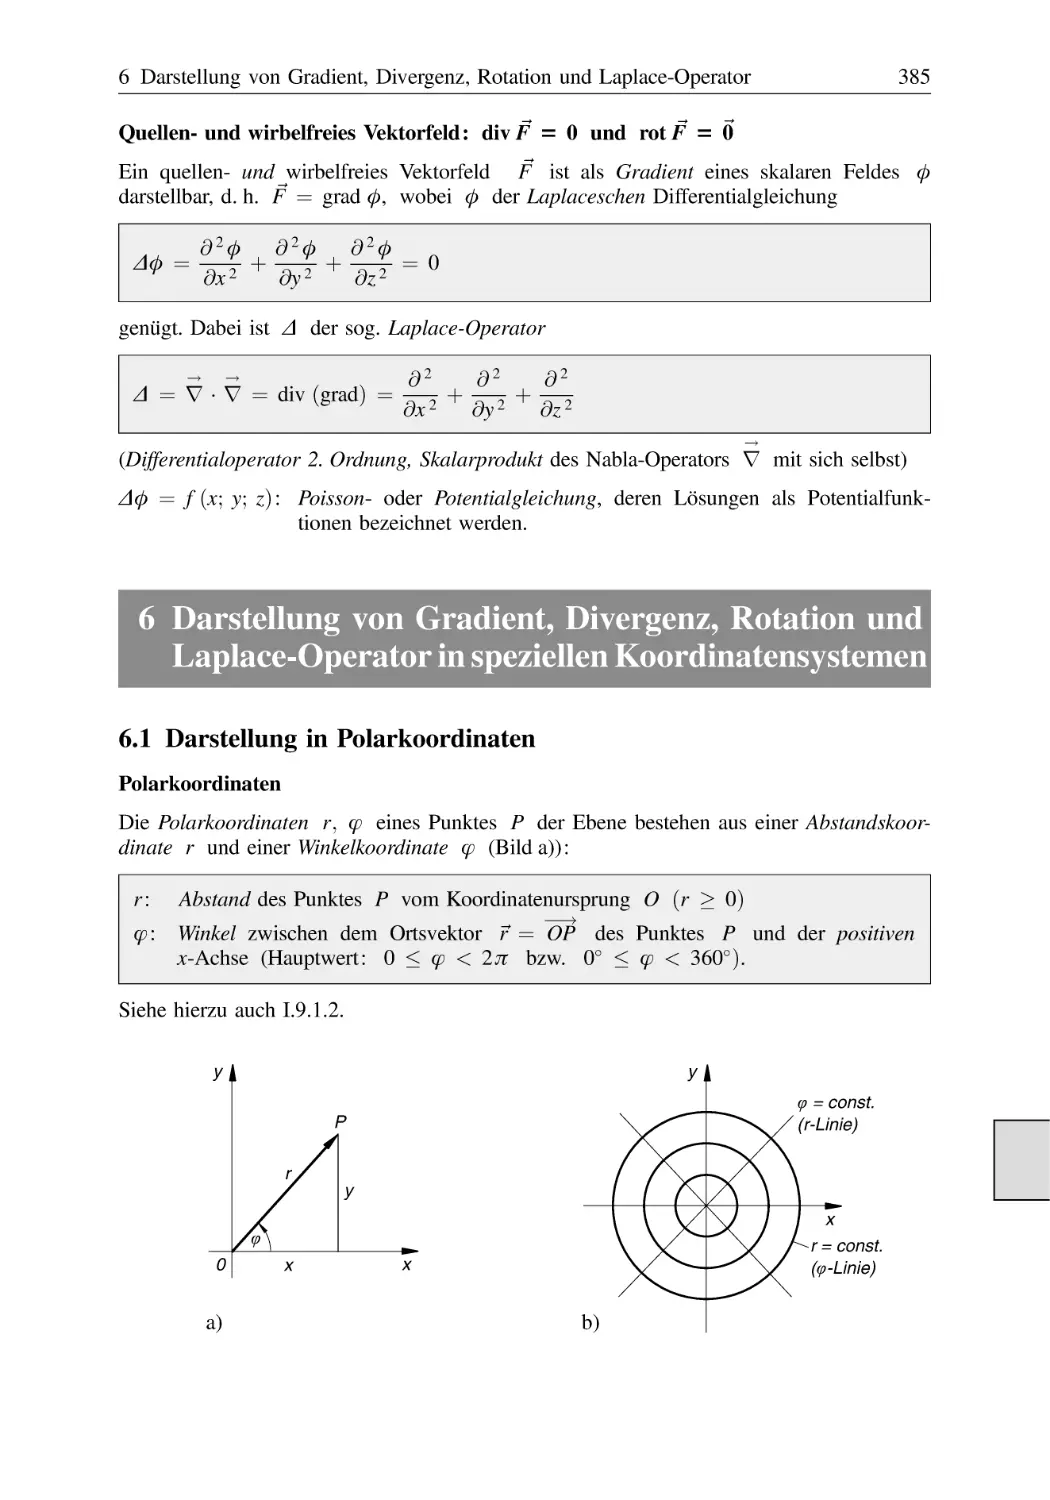 6 Darstellung von Gradient, Divergenz, Rotation und Laplace-Operator in speziellen Koordinatensystemen
6.1 Darstellung in Polarkoordinaten